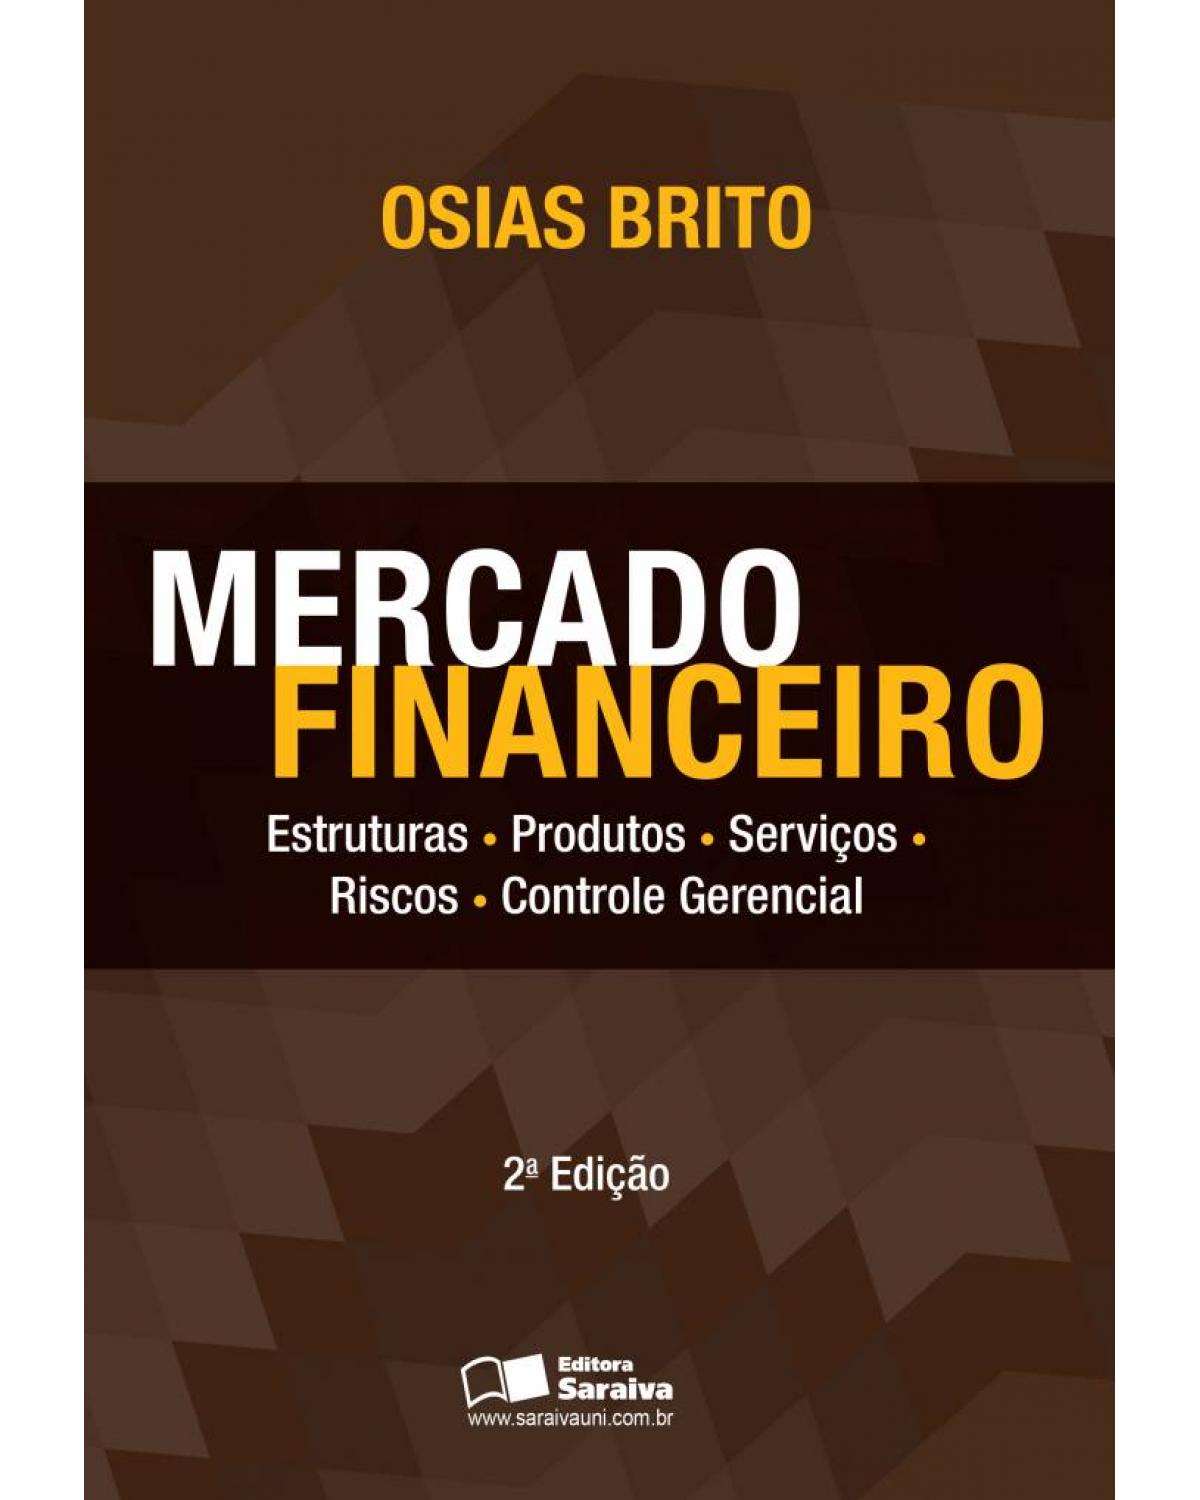 Mercado financeiro - estruturas, produtos, serviços, riscos, controle gerencial - 2ª Edição | 2013